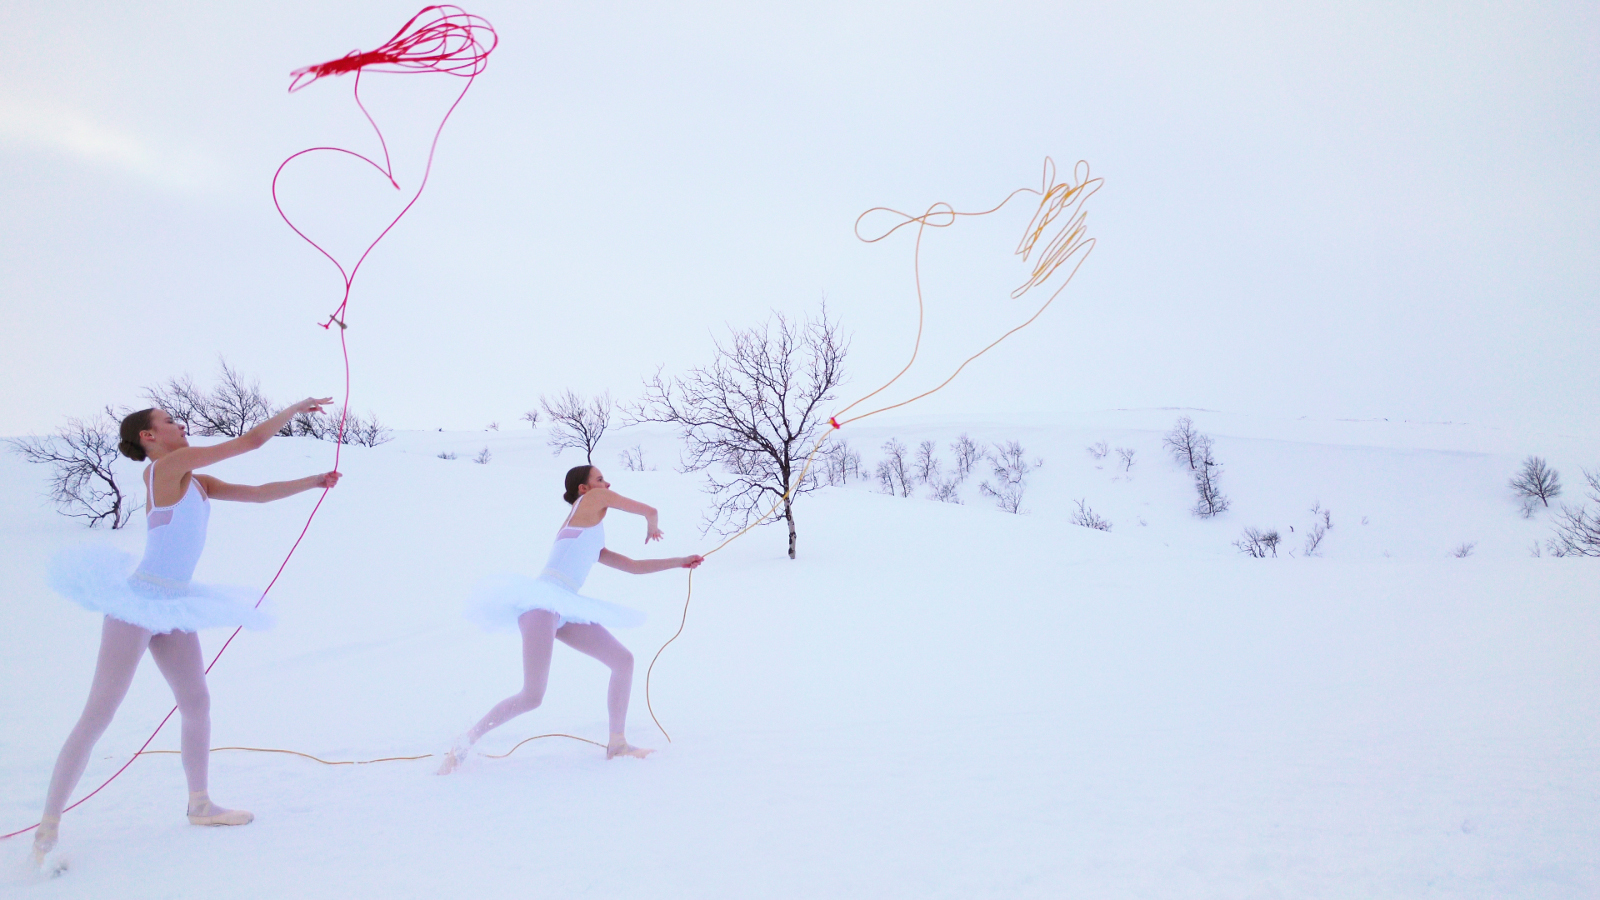 Kuvassa on valkoisessa talvimaisemassa kaksi tyttöä balleriinapuvussa ja he lennättävät punaisia narumaisia leijoja. Taustalla näkyy muutama paljas pensas.